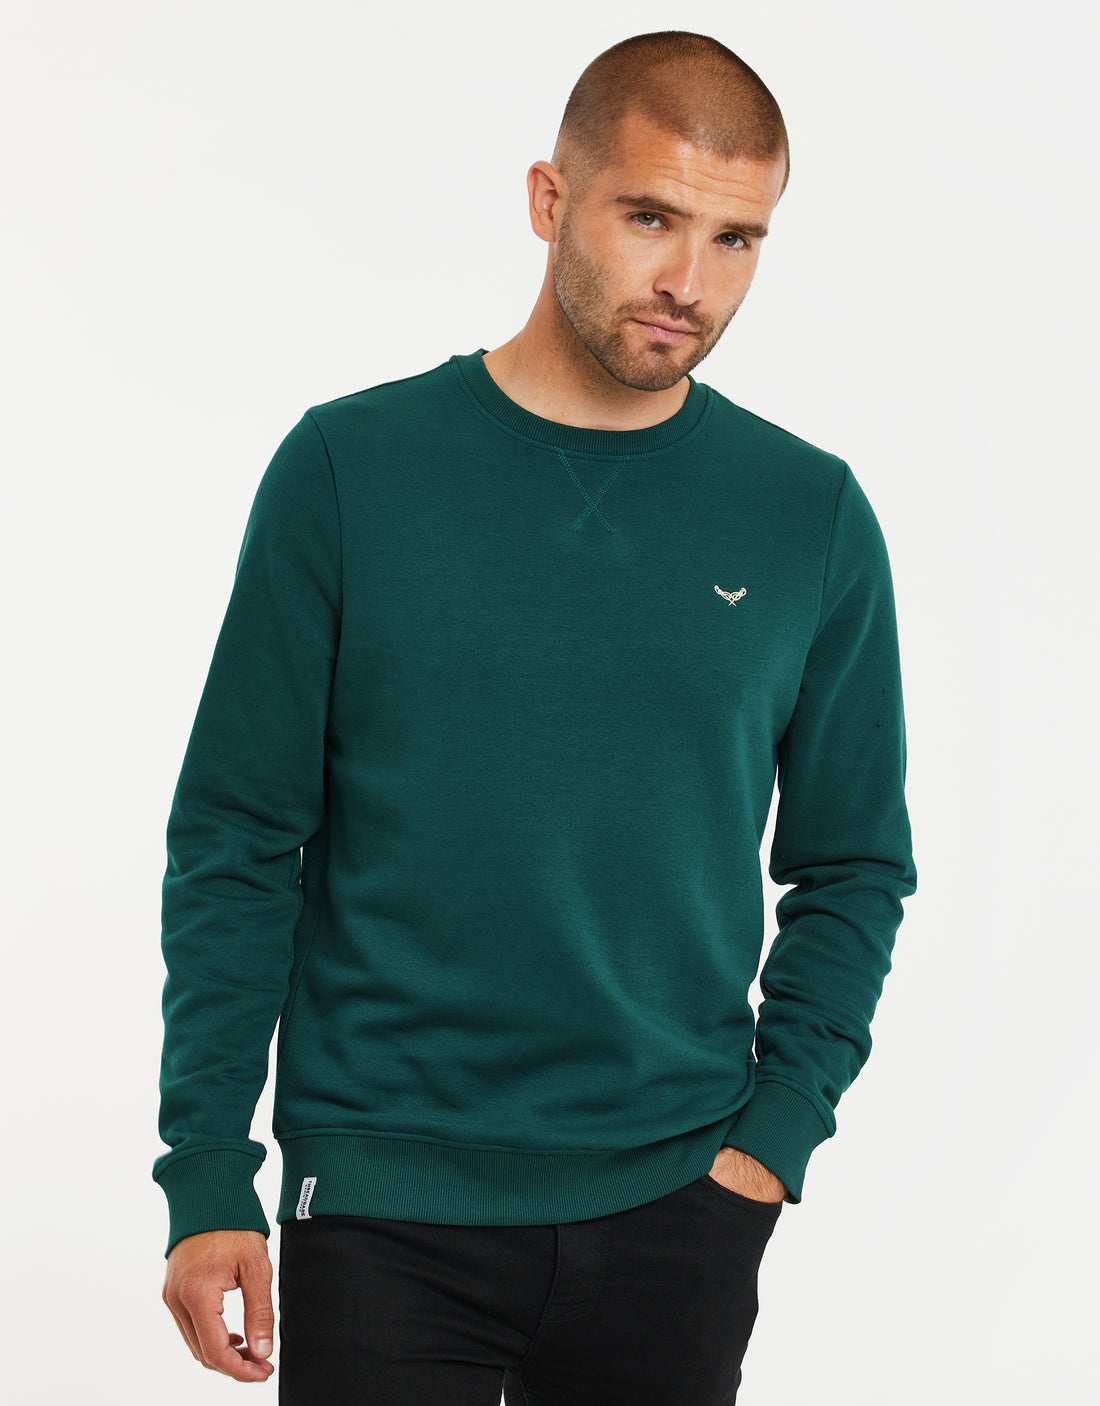 Men's Teal Green Crew Neck Fleece Sweatshirt – Threadbare